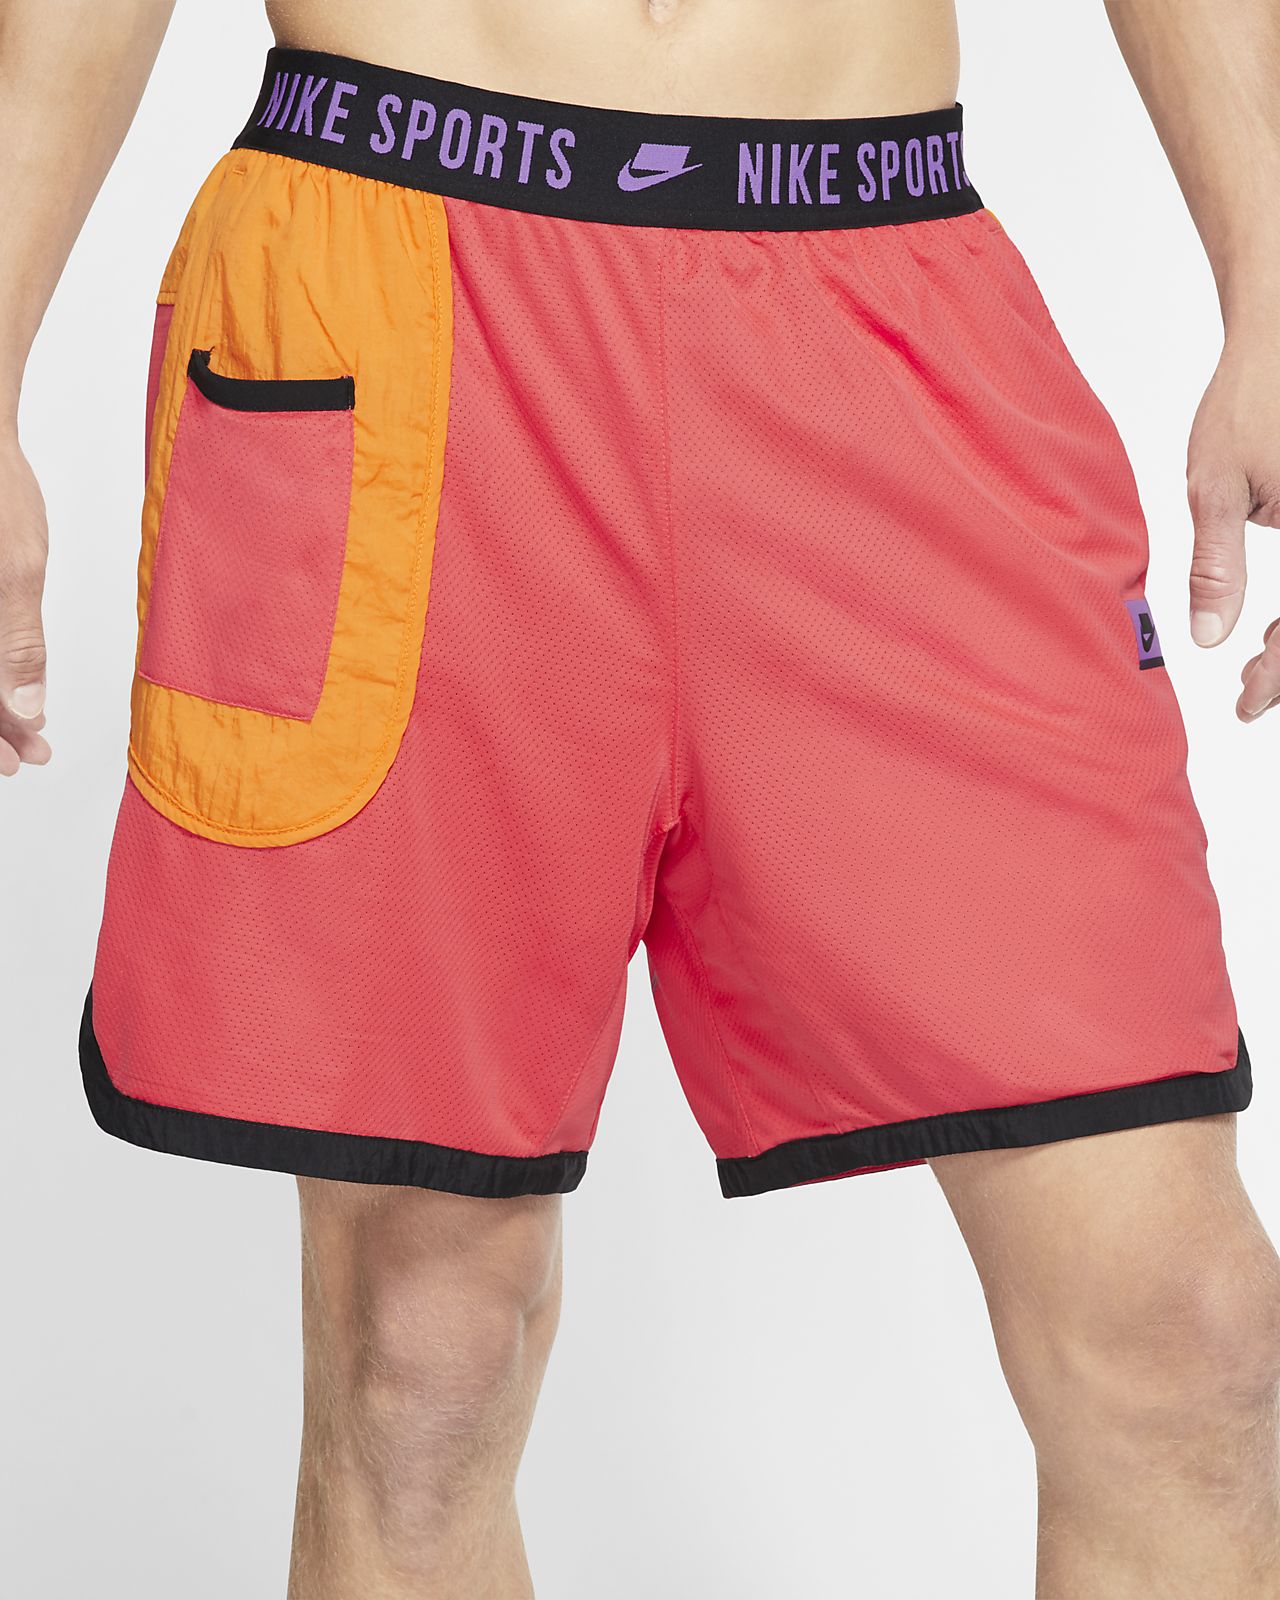 nike men's shorts dri fit